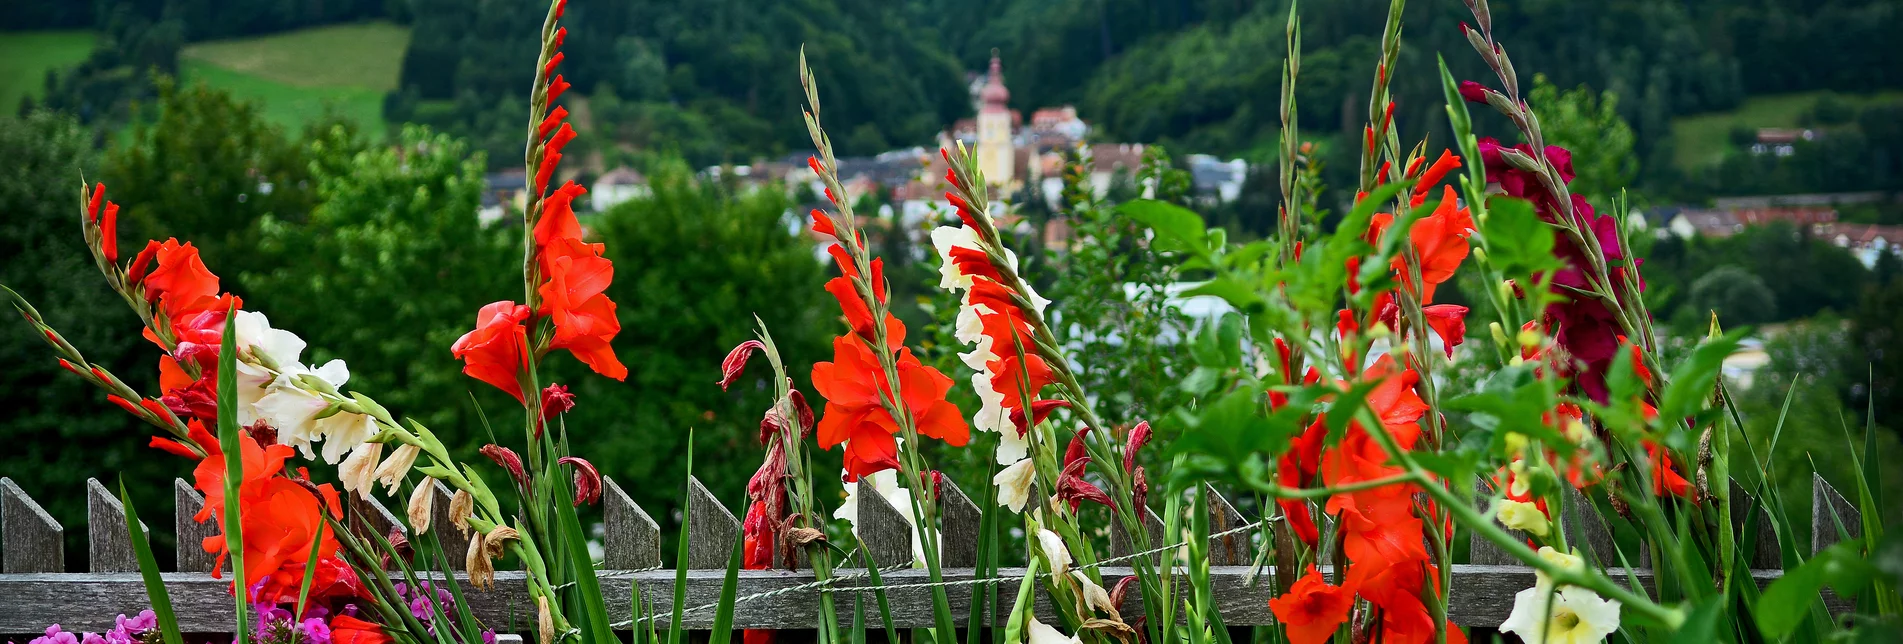 Blumen und Anger im Hintergrund | © Oststeiermark Tourismus | Christian Strassegger